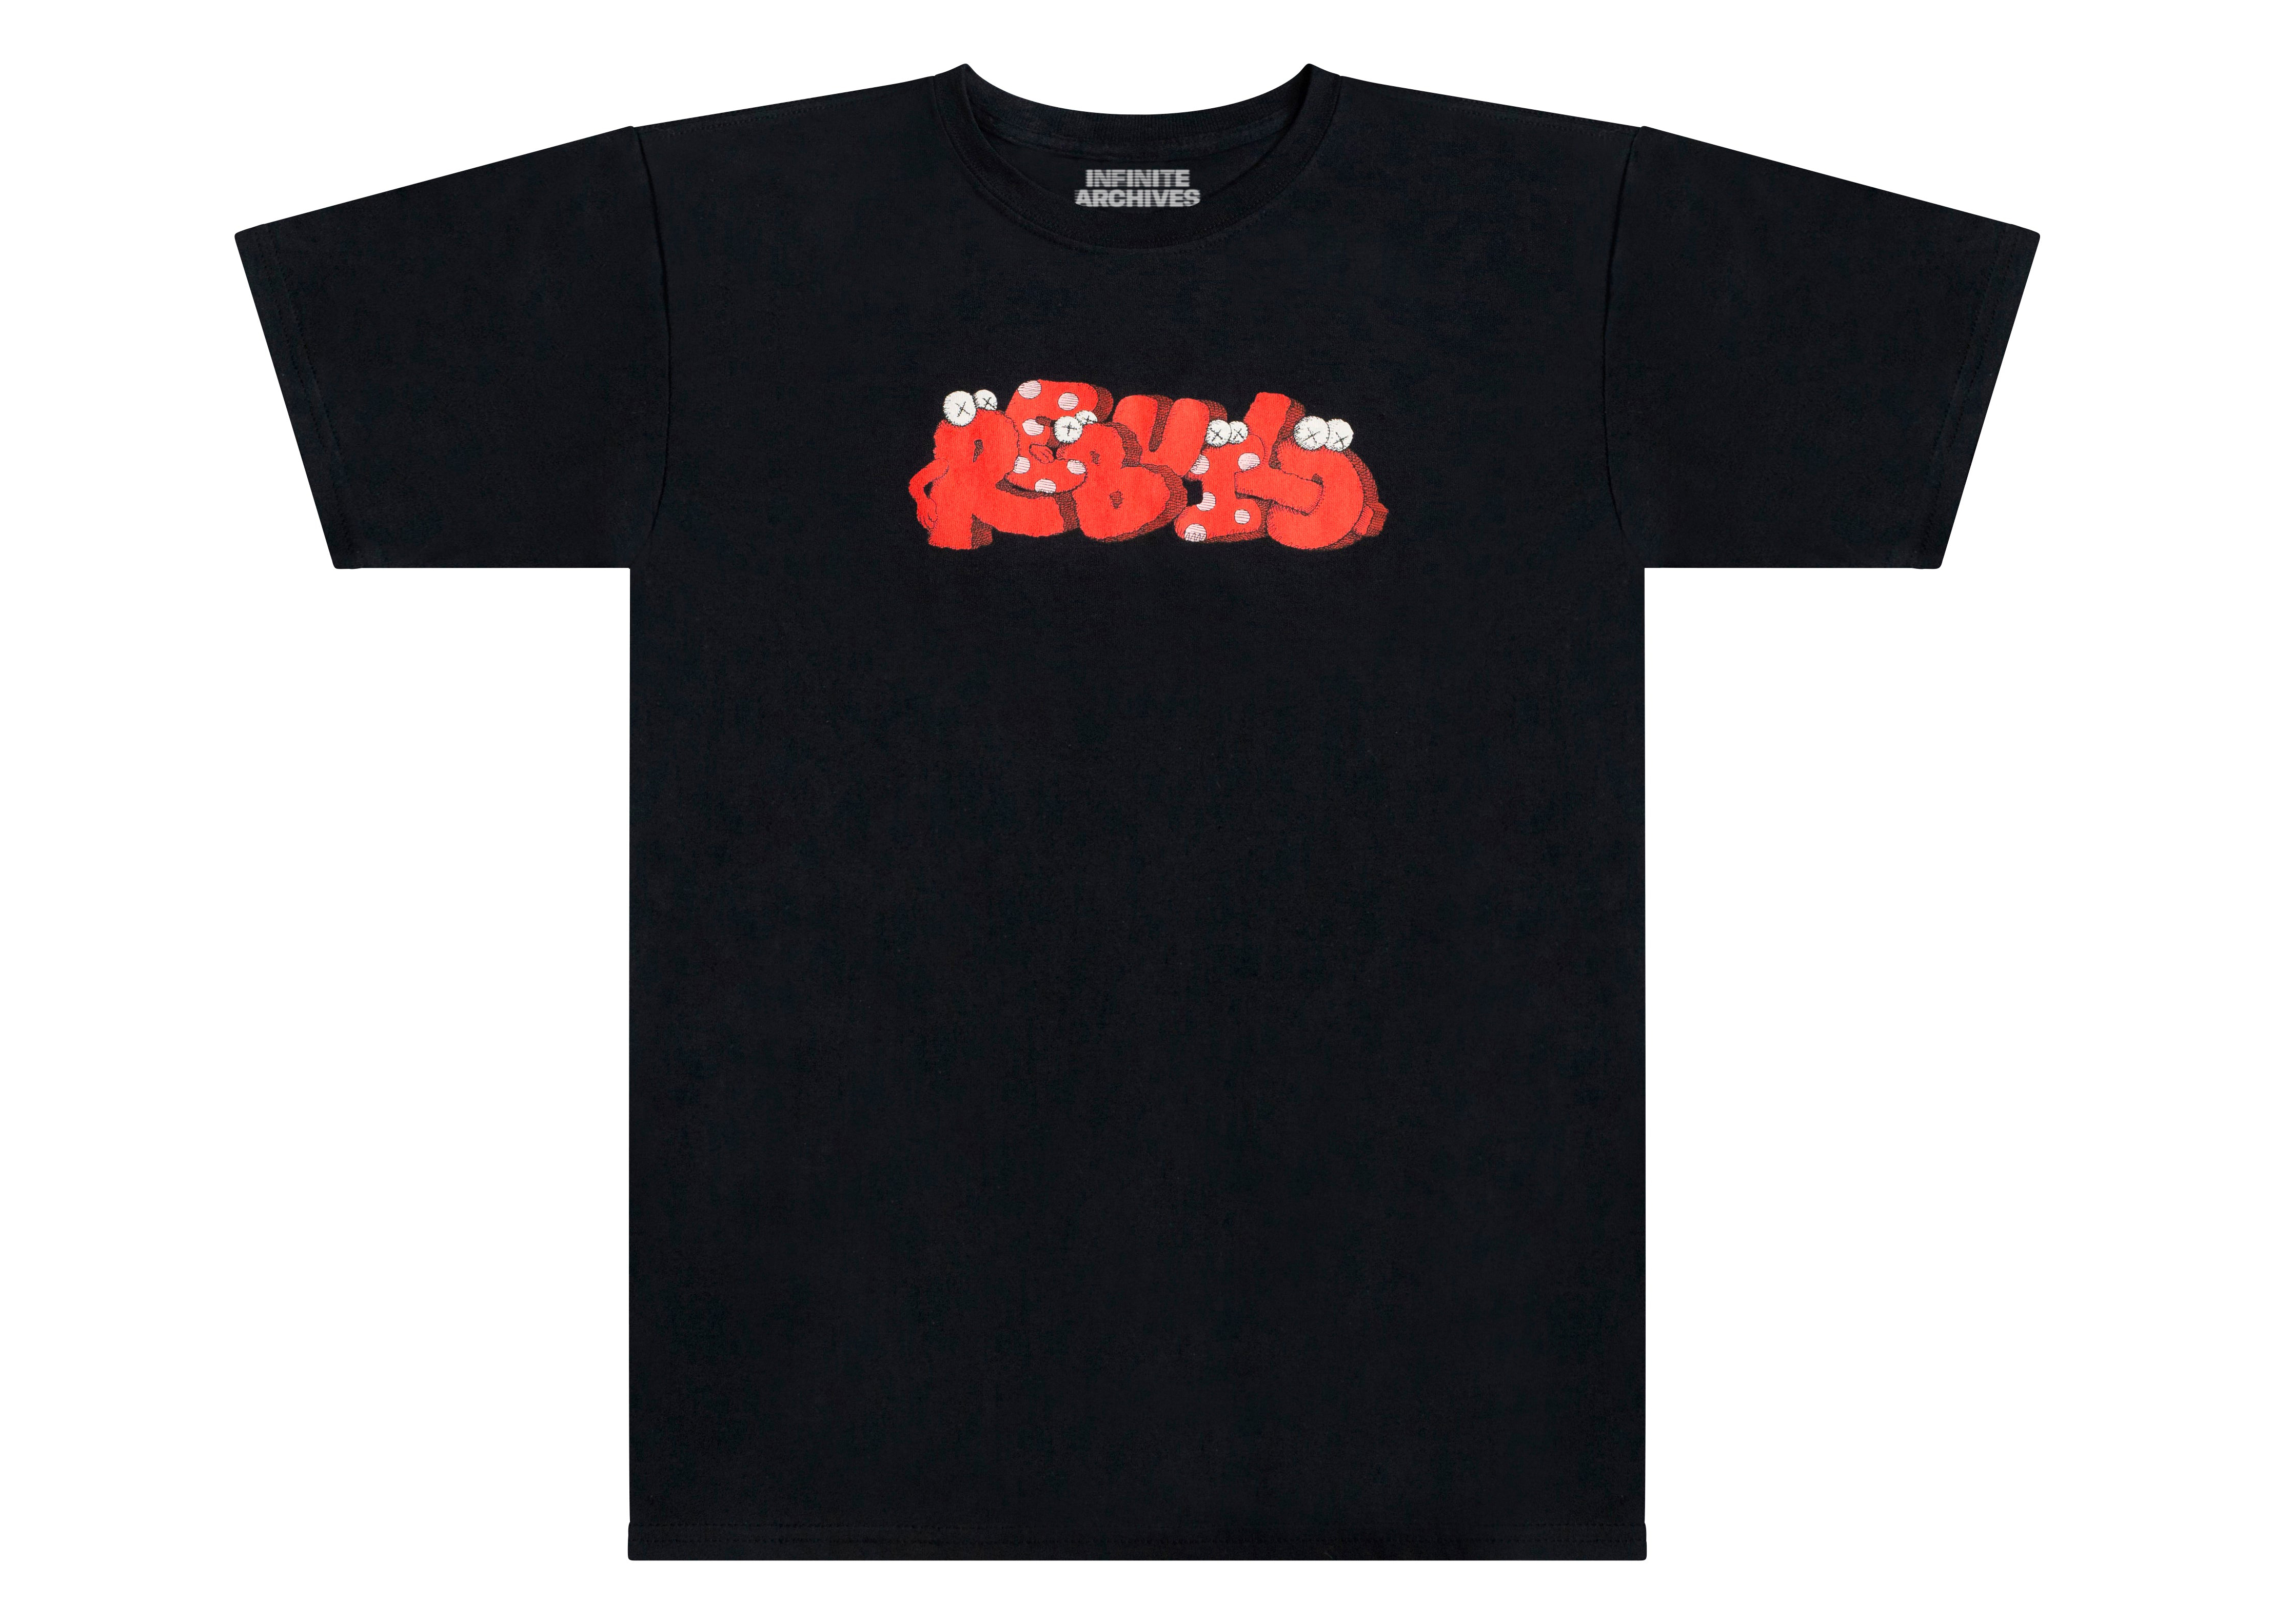 Human Made x KAWS #1 T-shirt Black Men's - SS21 - US